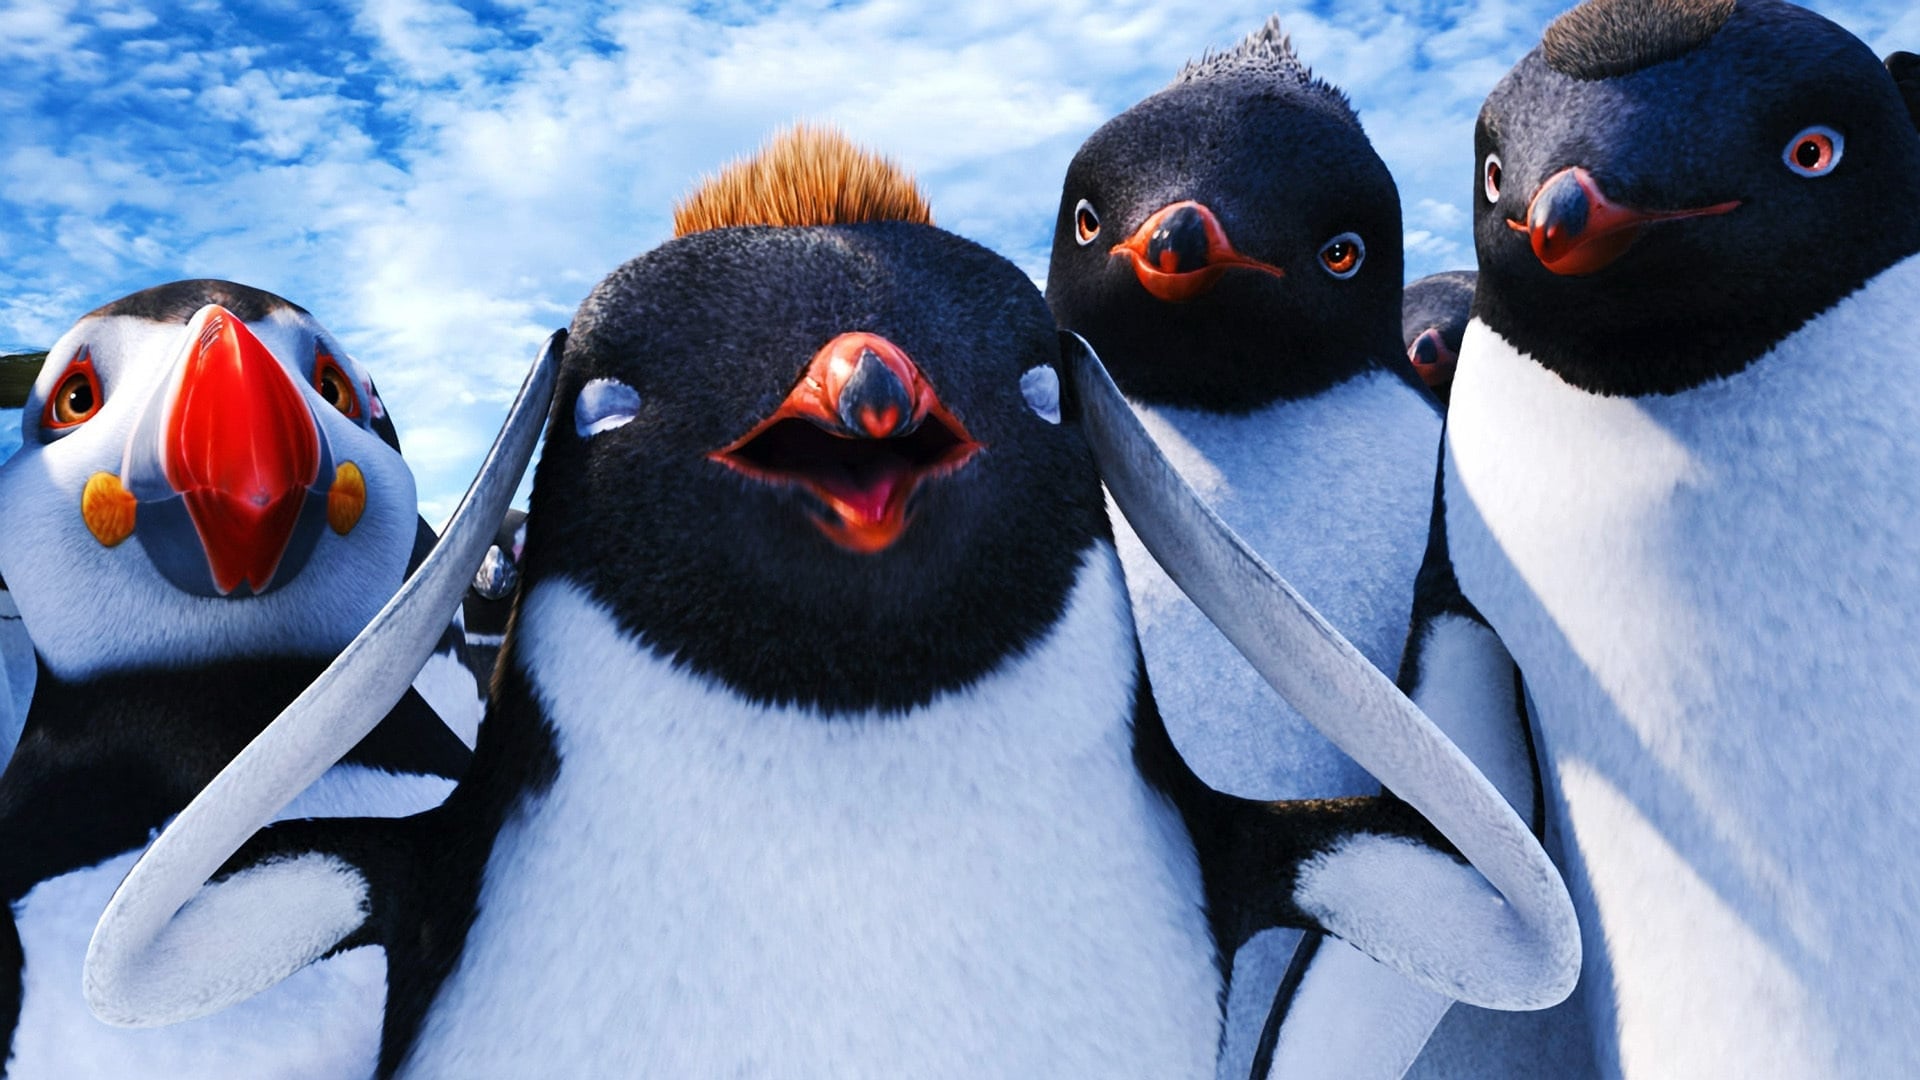 Happy Feet: El Pingüino 2